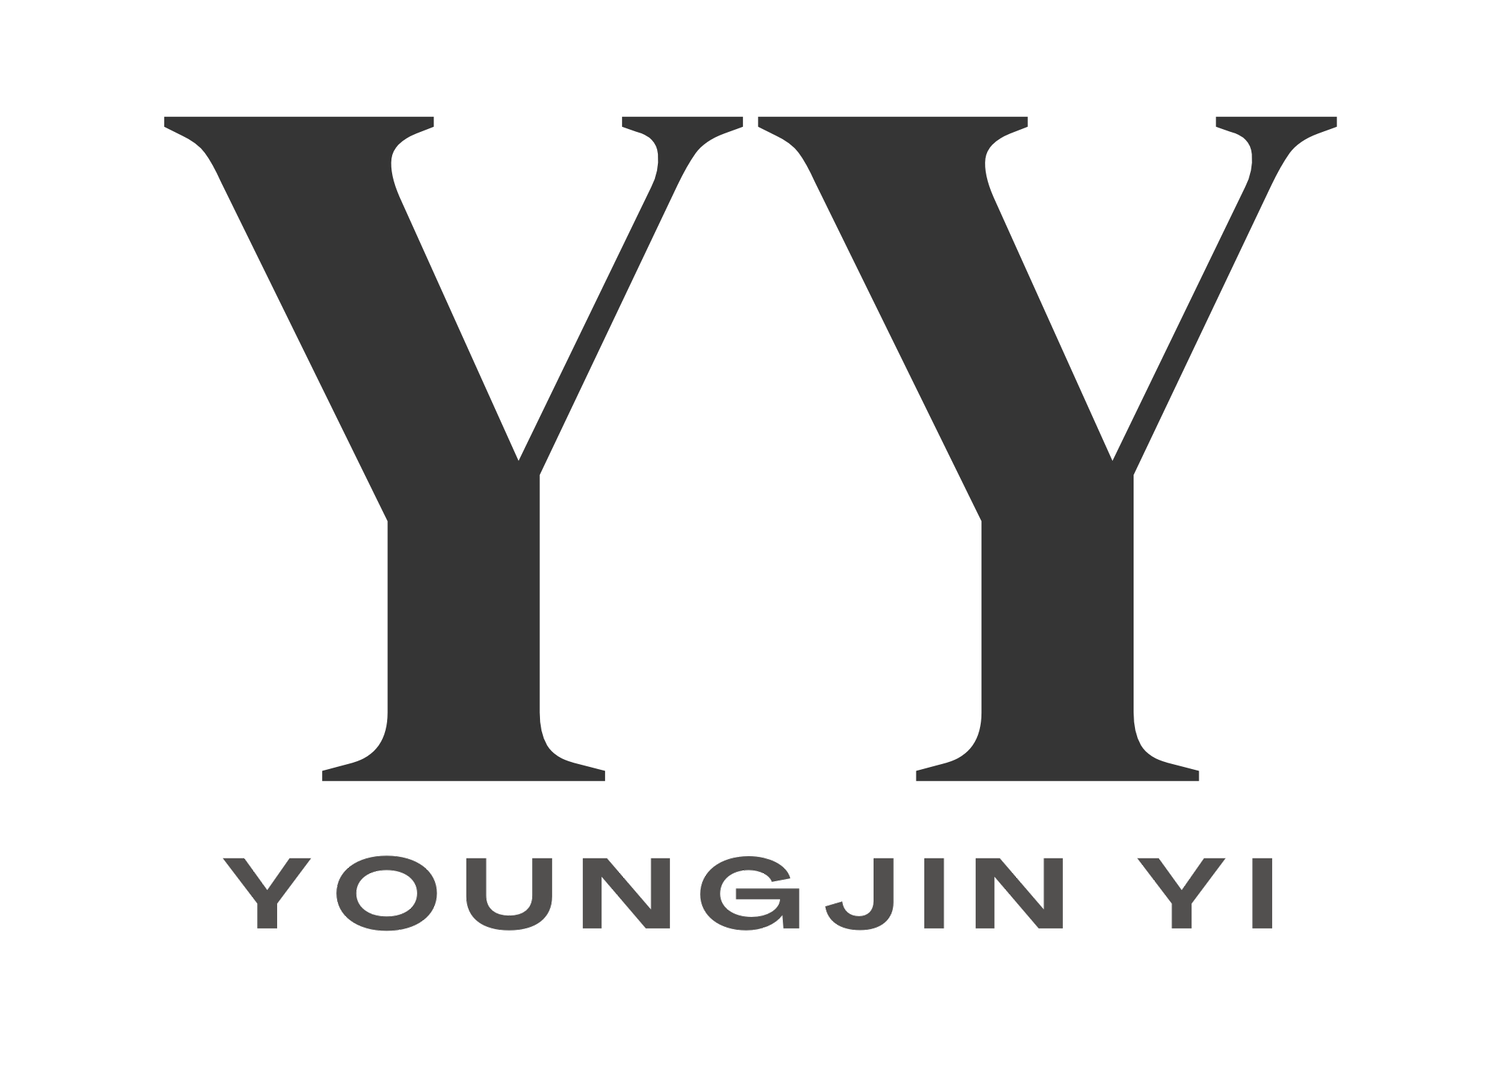 Youngjin Yi